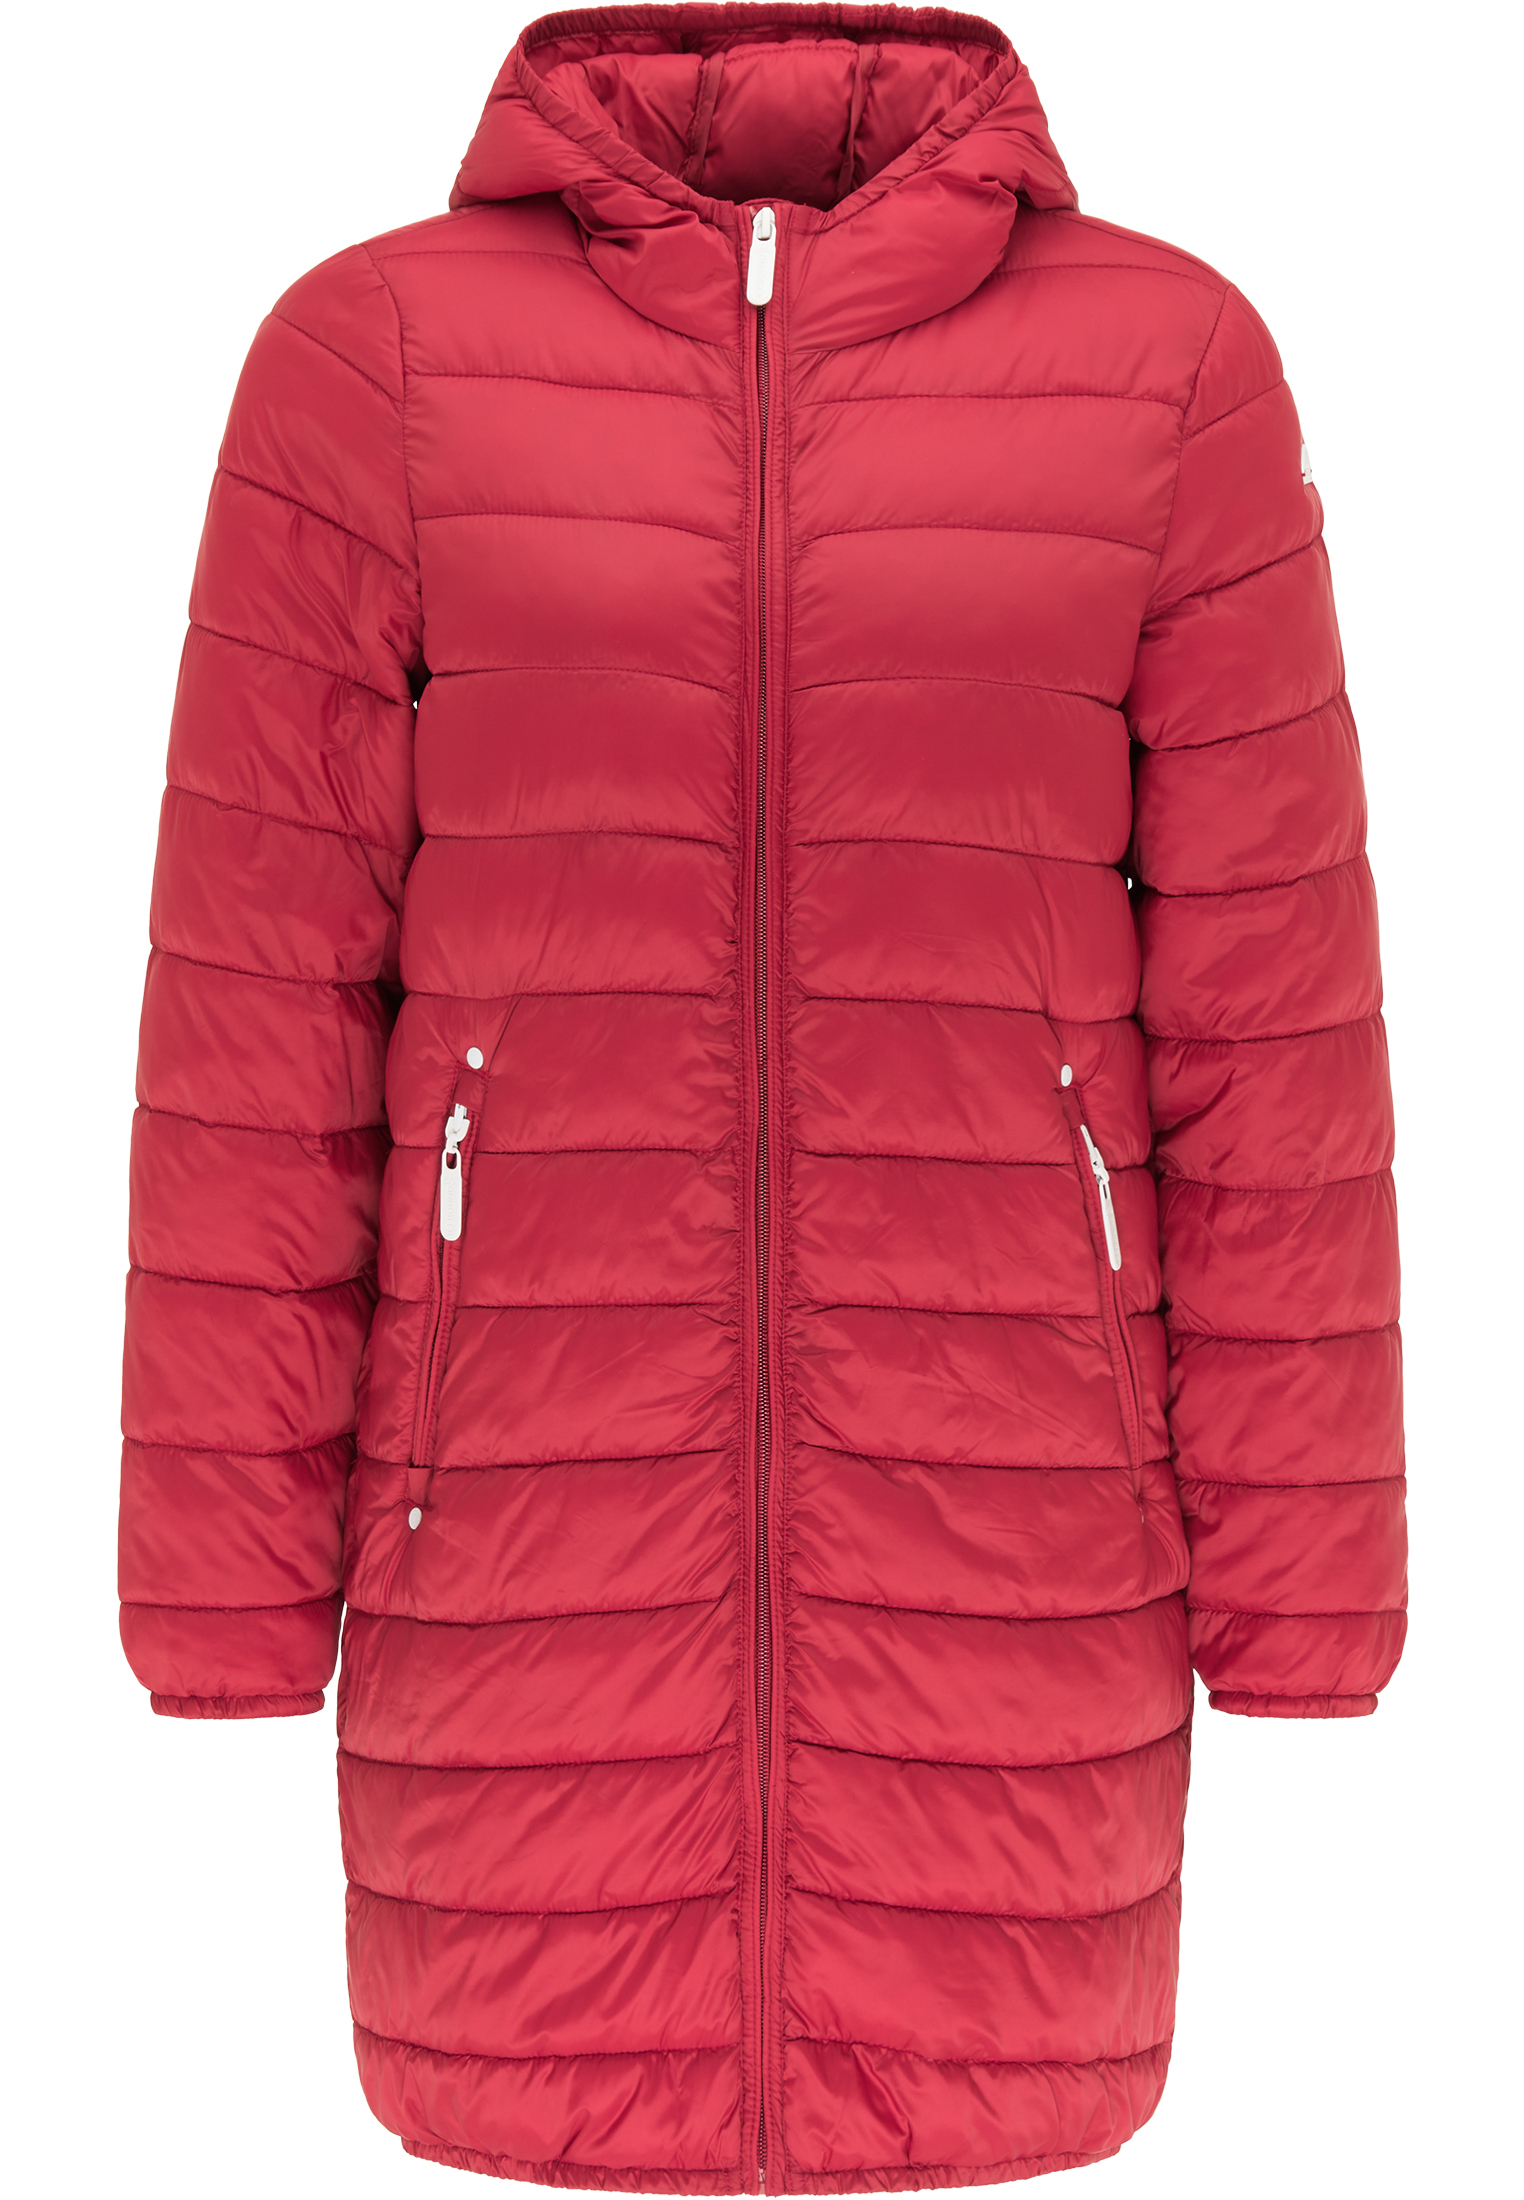 Kobiety Odzież ICEBOUND Płaszcz zimowy w kolorze Czerwonym 